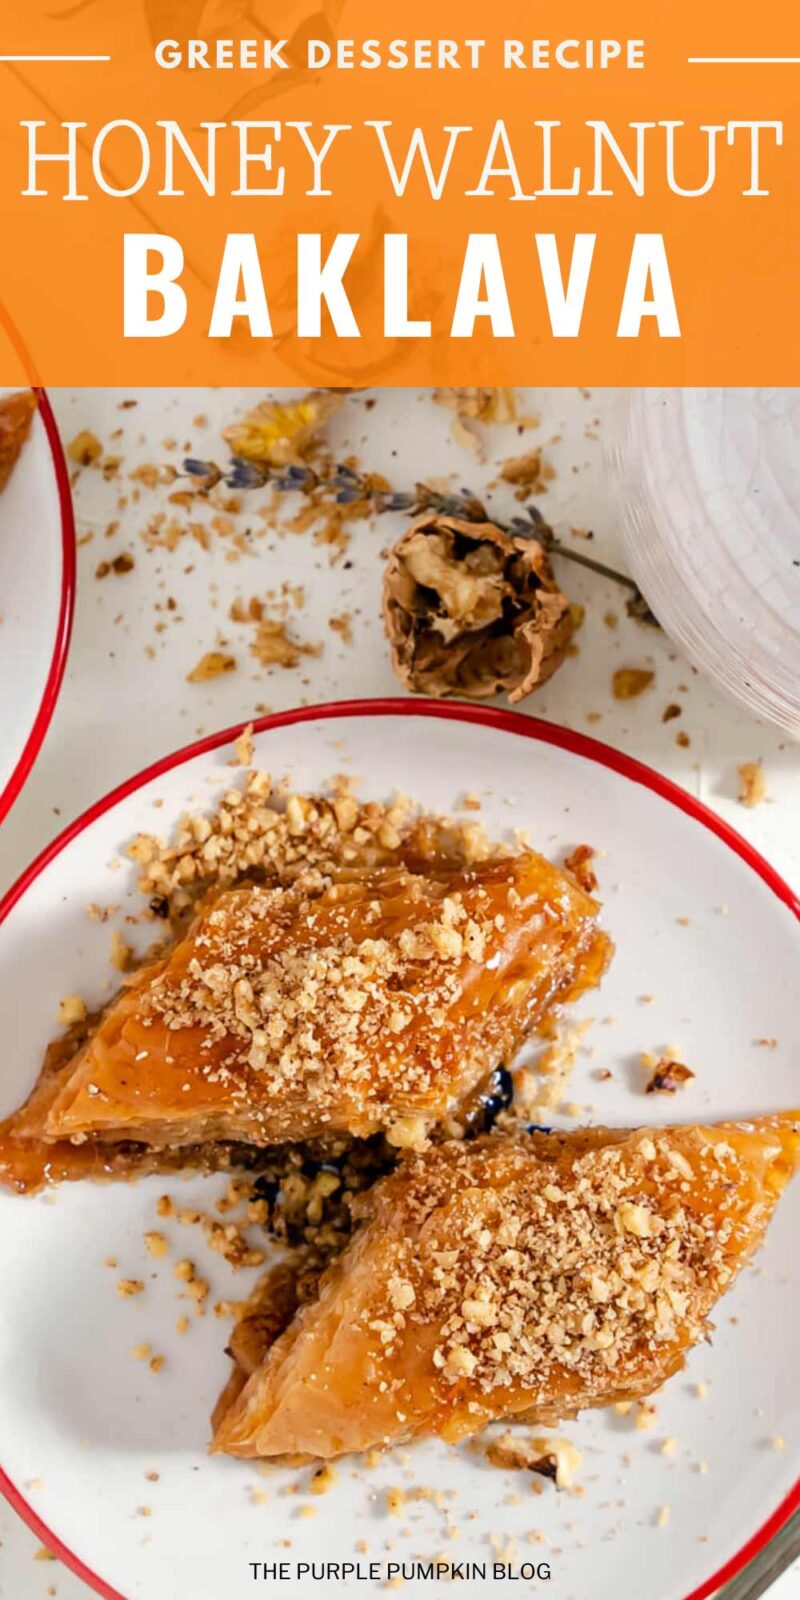 Greek Dessert Recipe - Honey Walnut Baklava